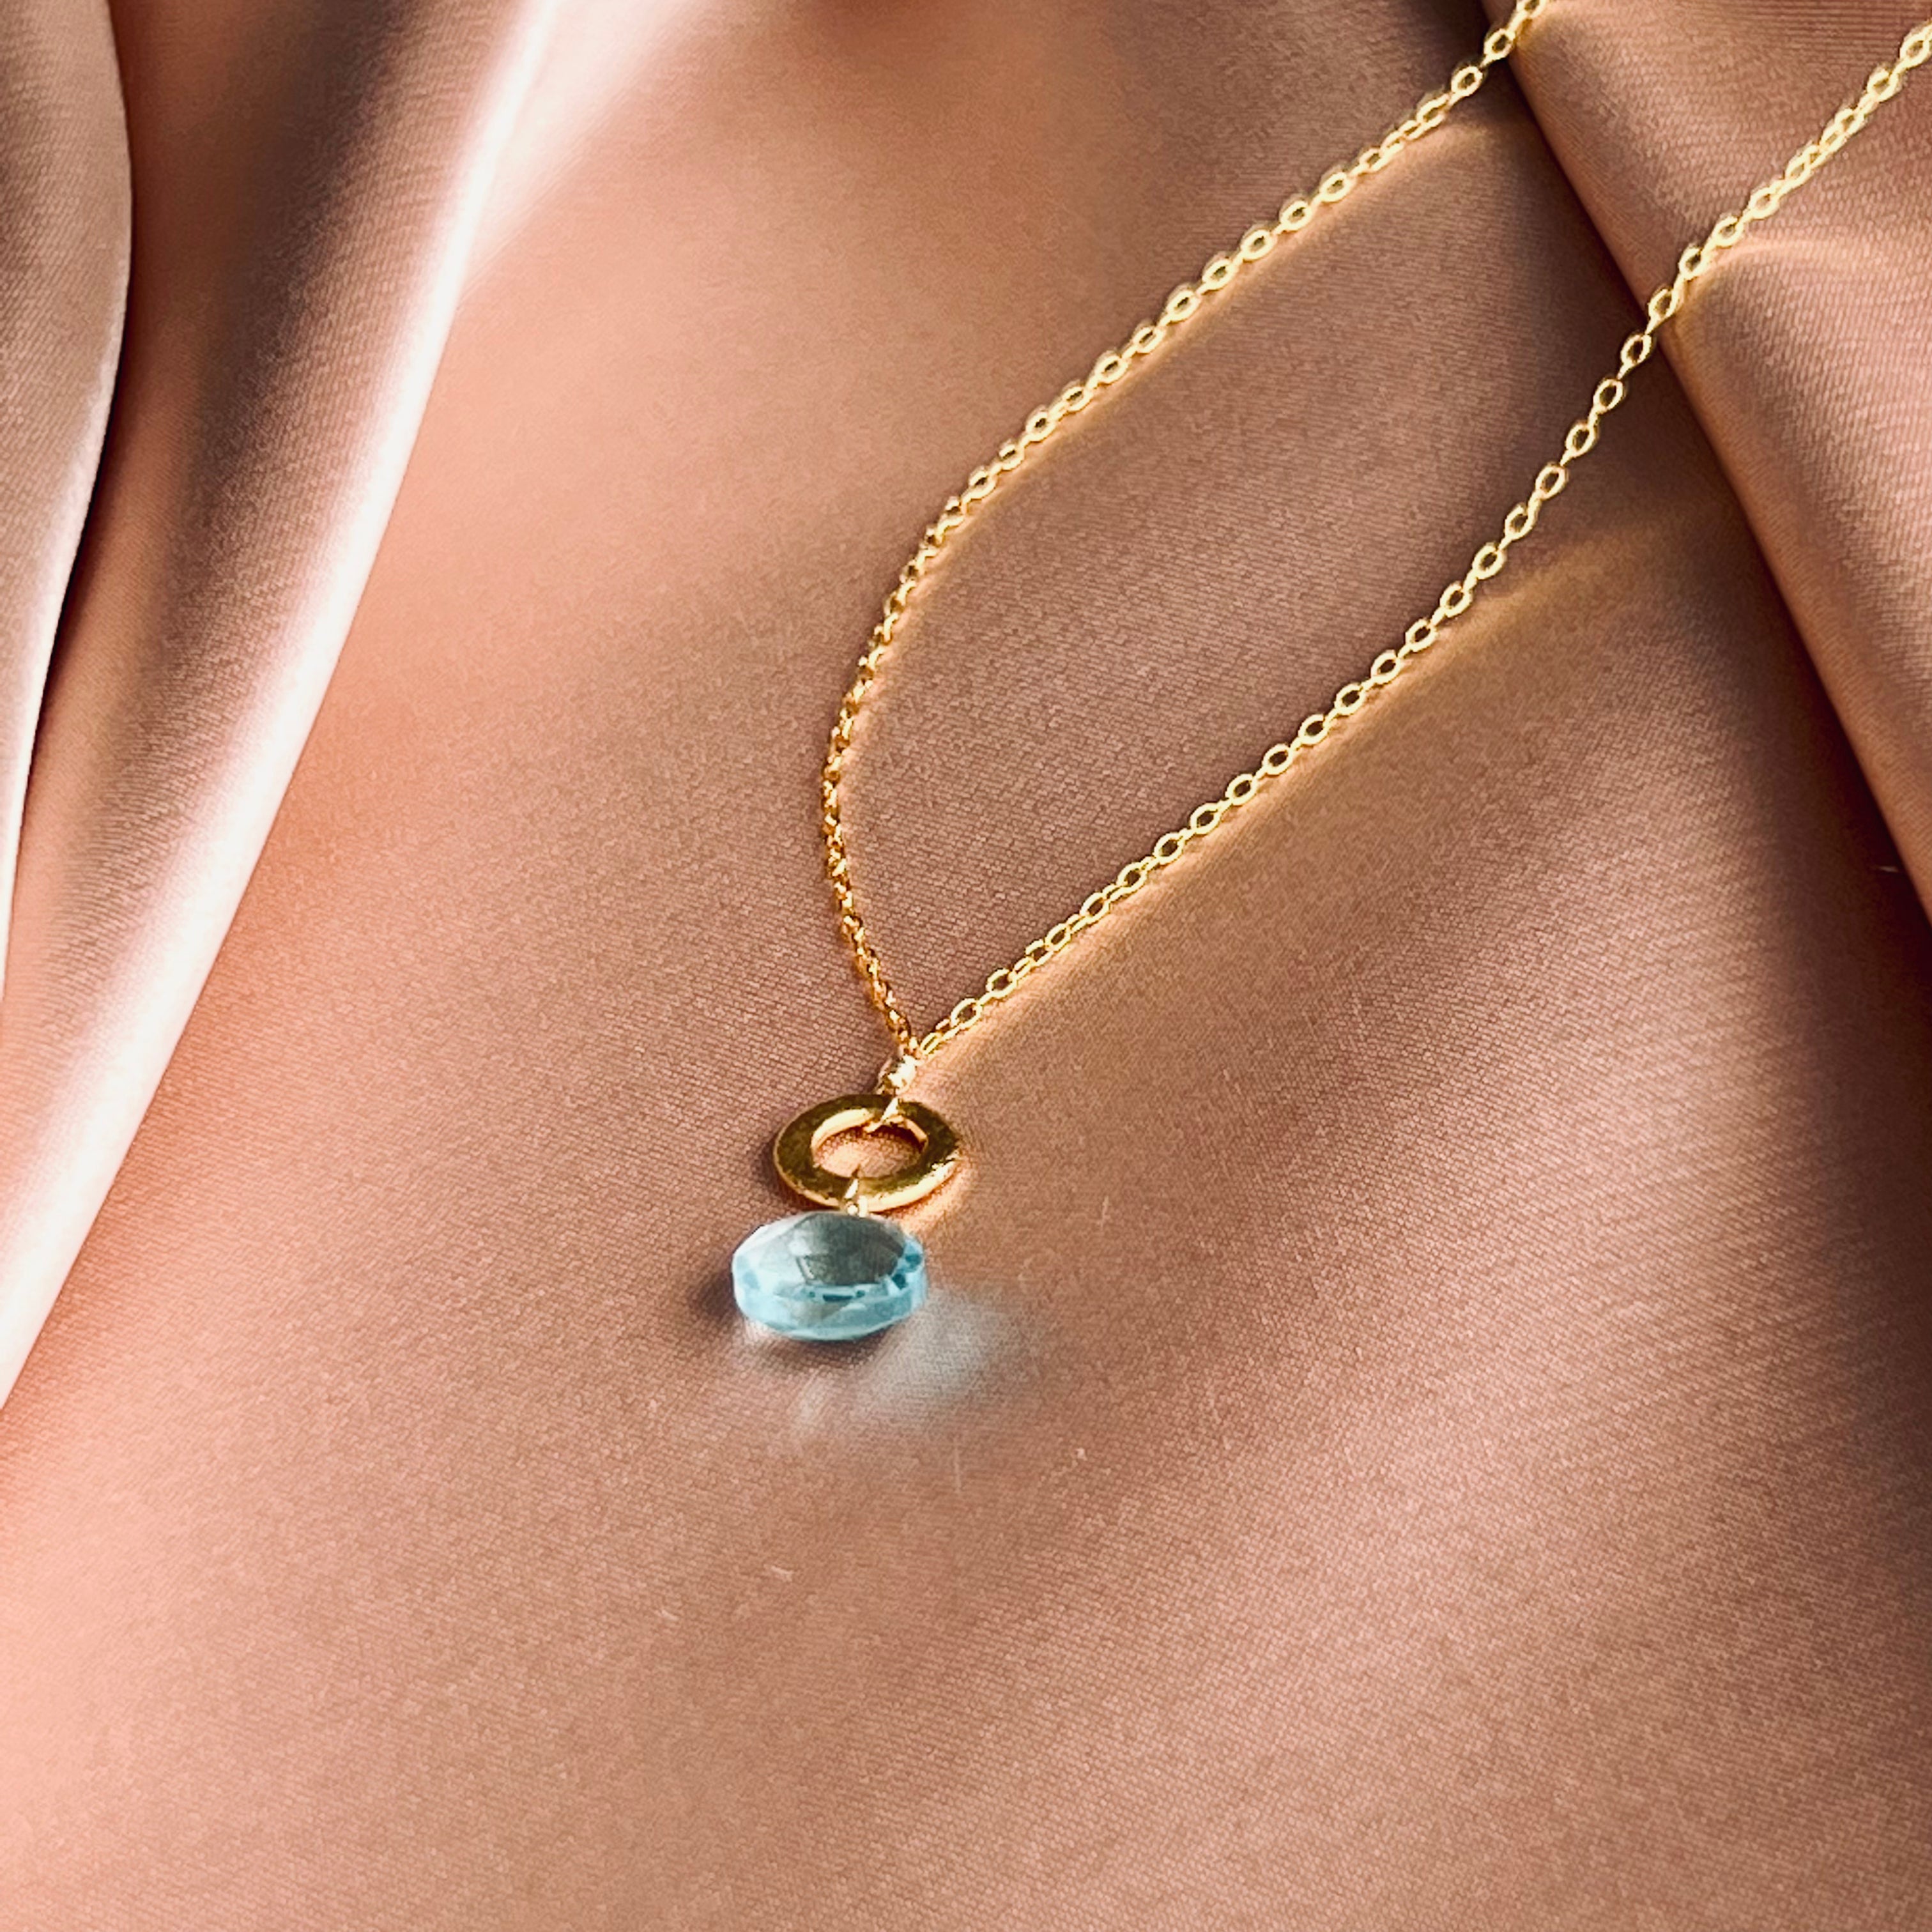 Aquamarine Gemstone Pendant Necklace - 14k Gold Plated Elegance